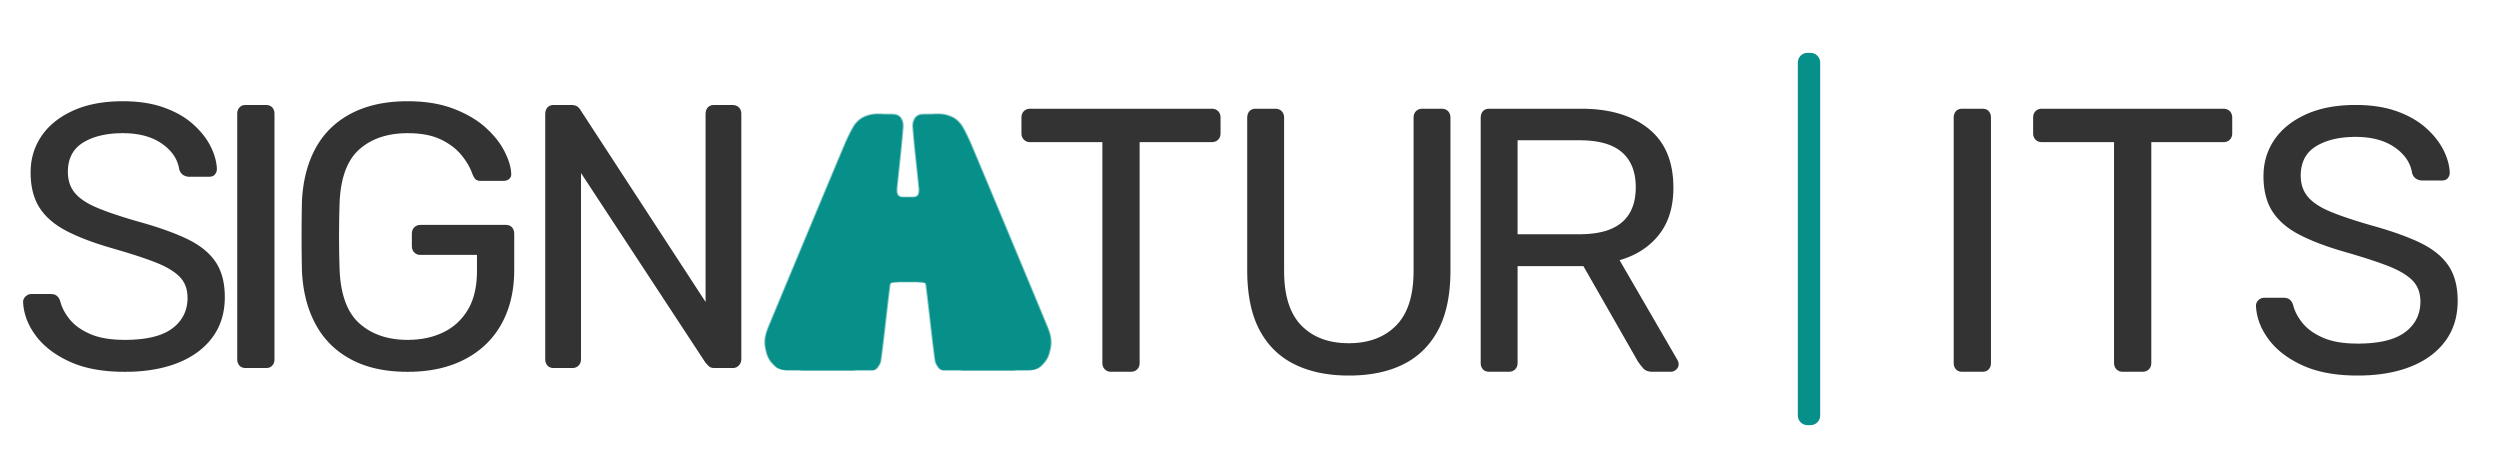 Signatur ITS logo